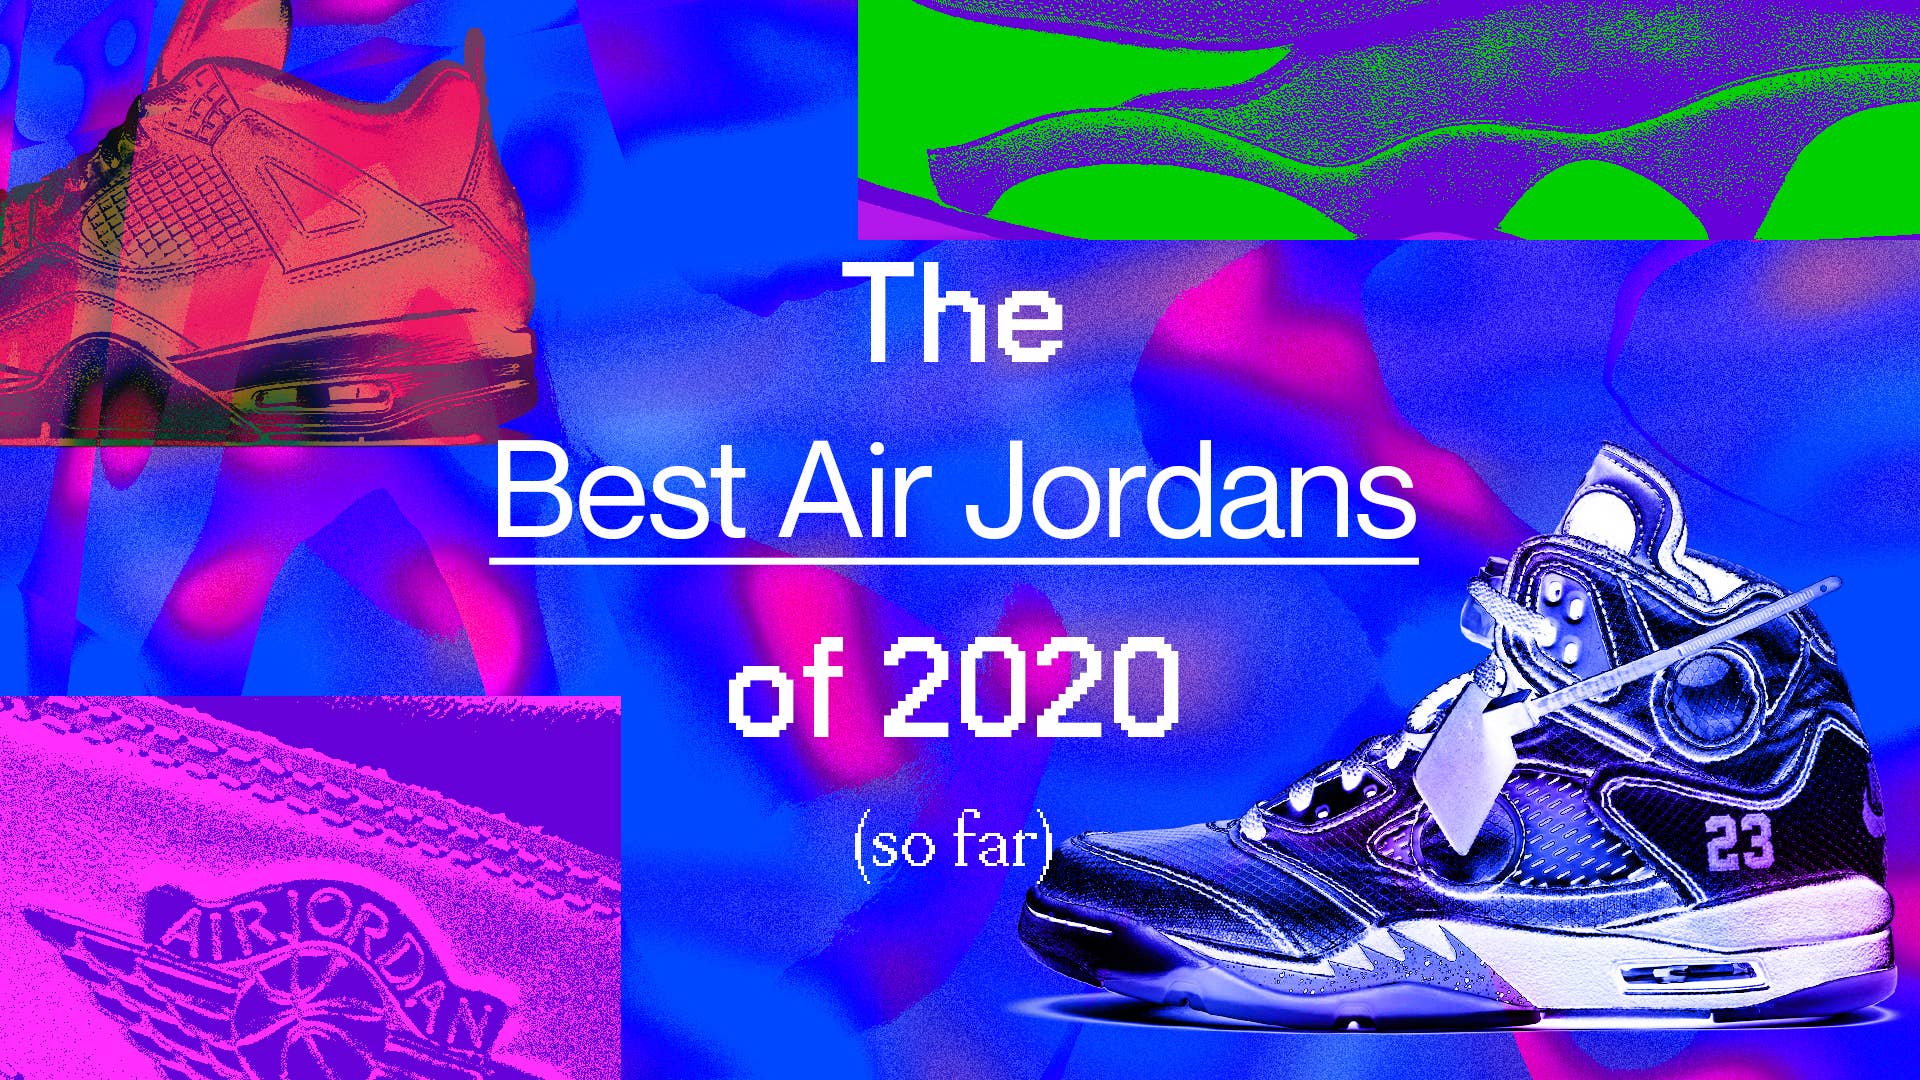 Retro Air Jordan 5 x Supreme Custom Kicks Sneaker Poster Art